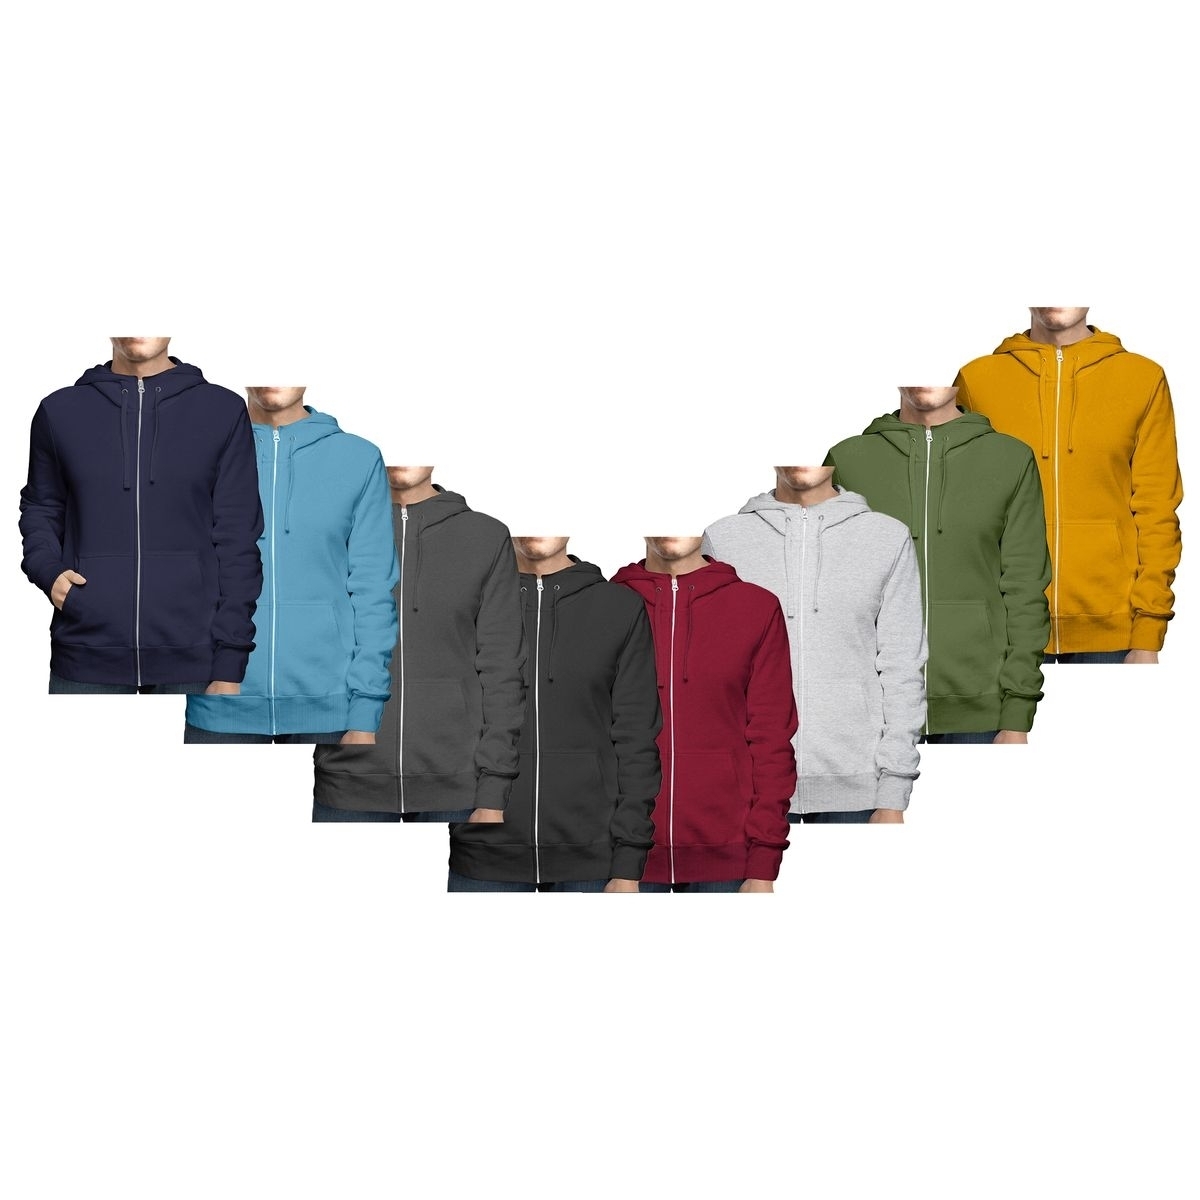 Men's Big & Tall Winter Warm Soft Cozy Full Zip-Up Fleece Lined Hoodie Sweatshirt - Grey, Small